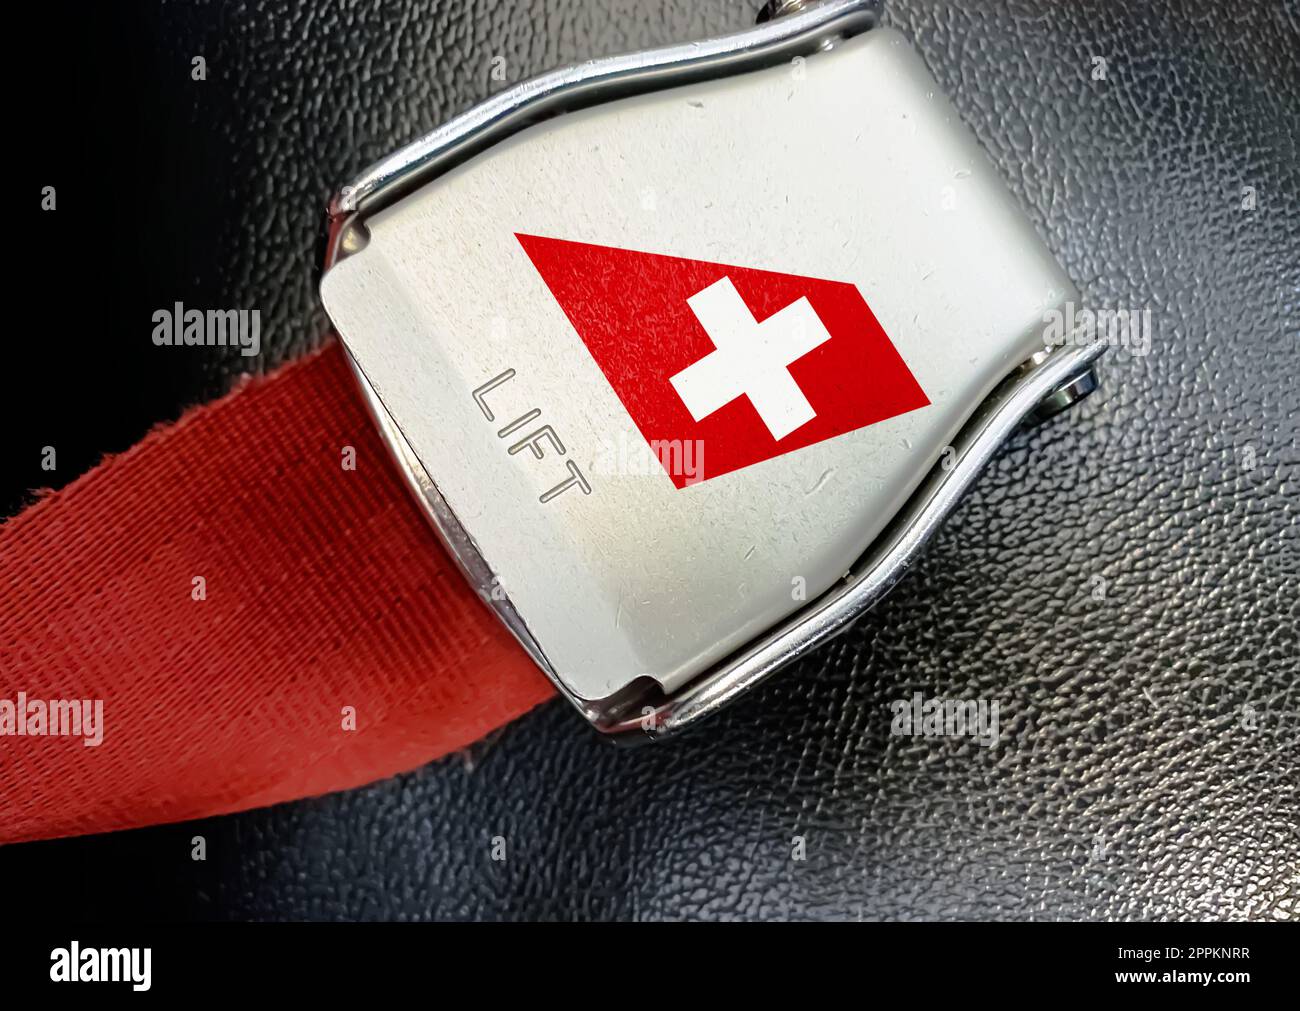 Dettaglio della fibbia della cintura di sicurezza con il logo Swiss Air su un sedile vuoto Foto Stock